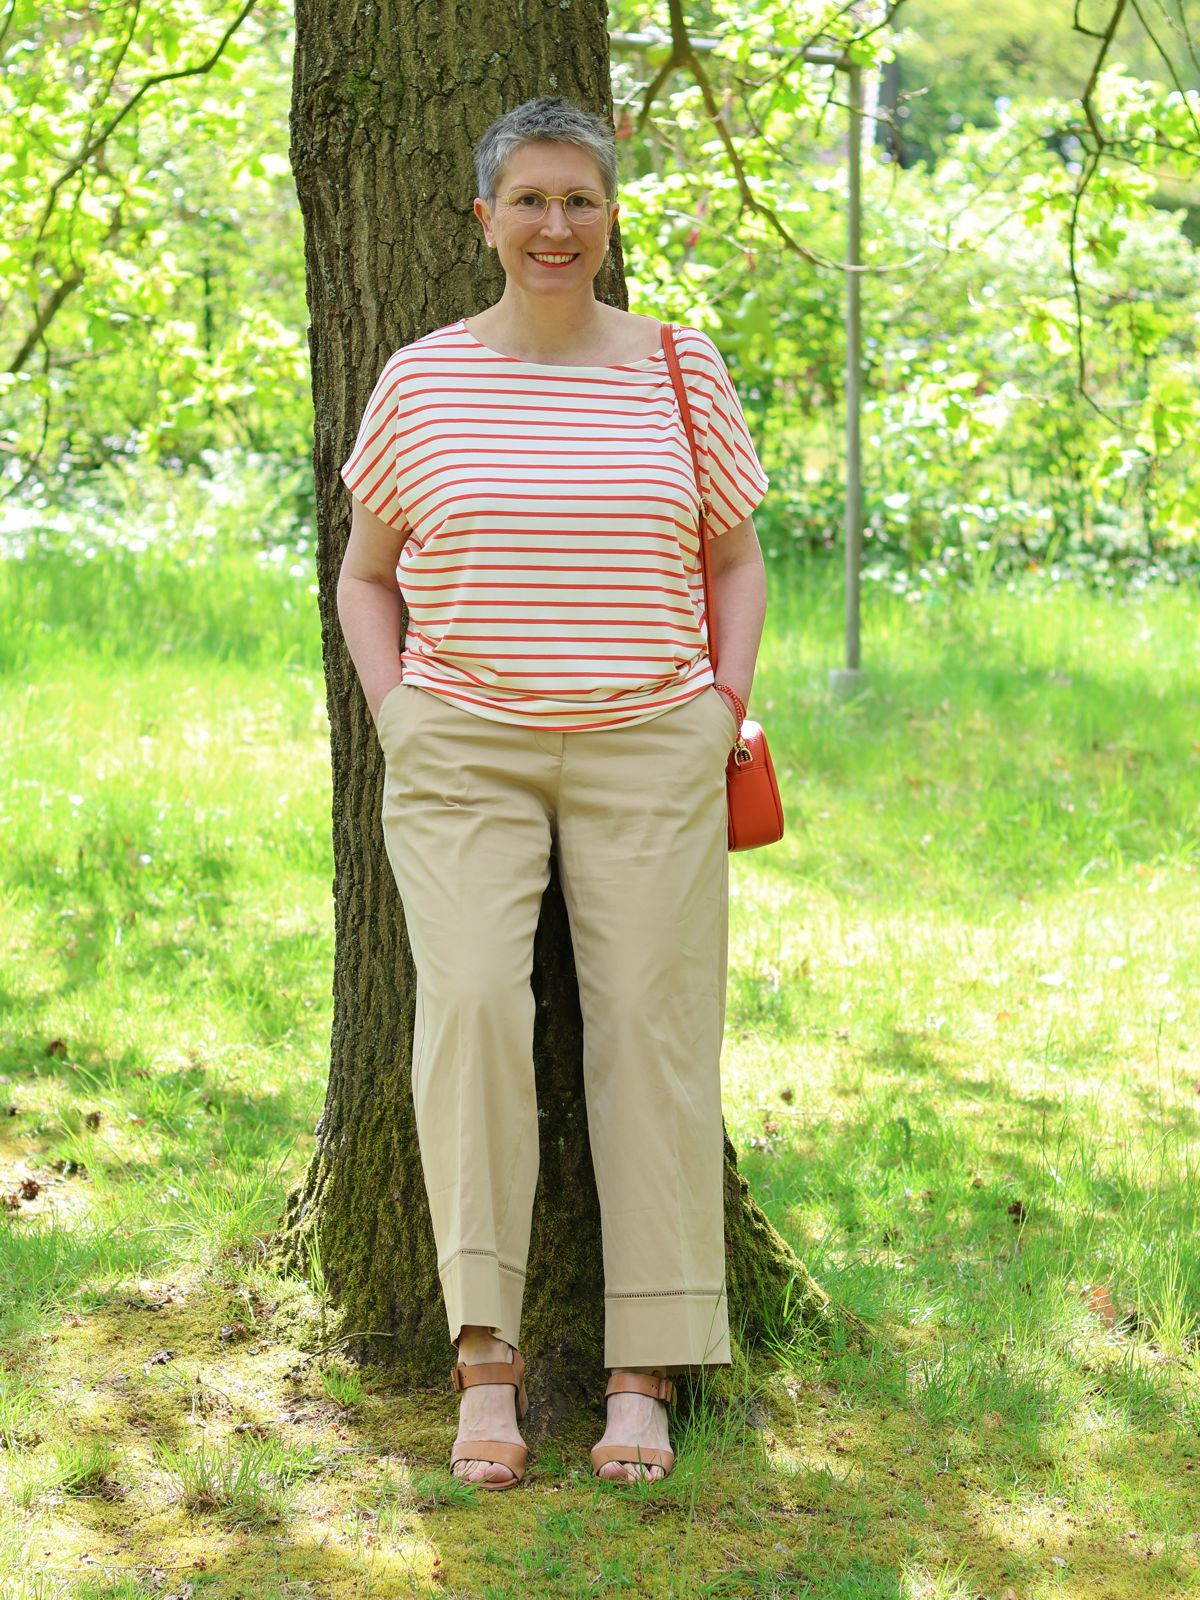 Ines Meyrose - Outfit 2024 - Ringelshirt in orange-cremeweiß - weite Sommerhose sandfarben/beige - cognacfarbene Sandaletten mit Blocksatz - kleine Handtasche in Papaya - Korallenkette als Armband